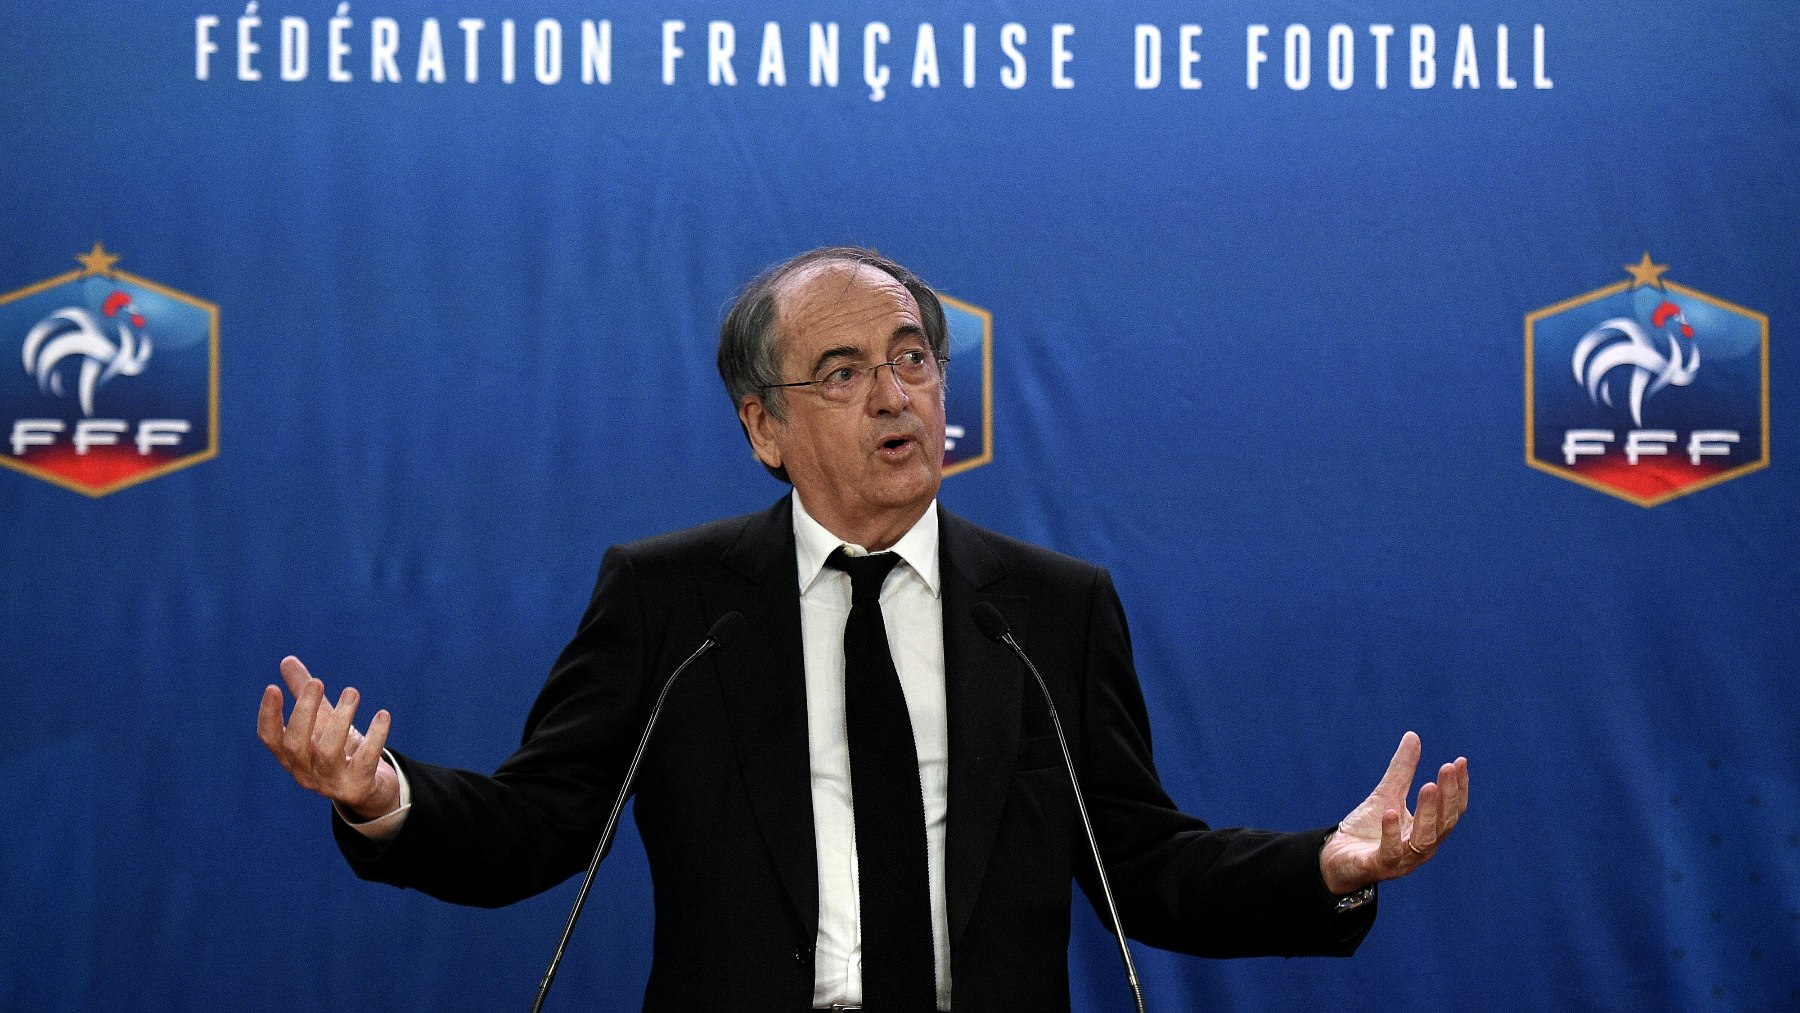 Noël Le Graët, ex presidente de la Federación Francesa de Fútbol. (AFP)